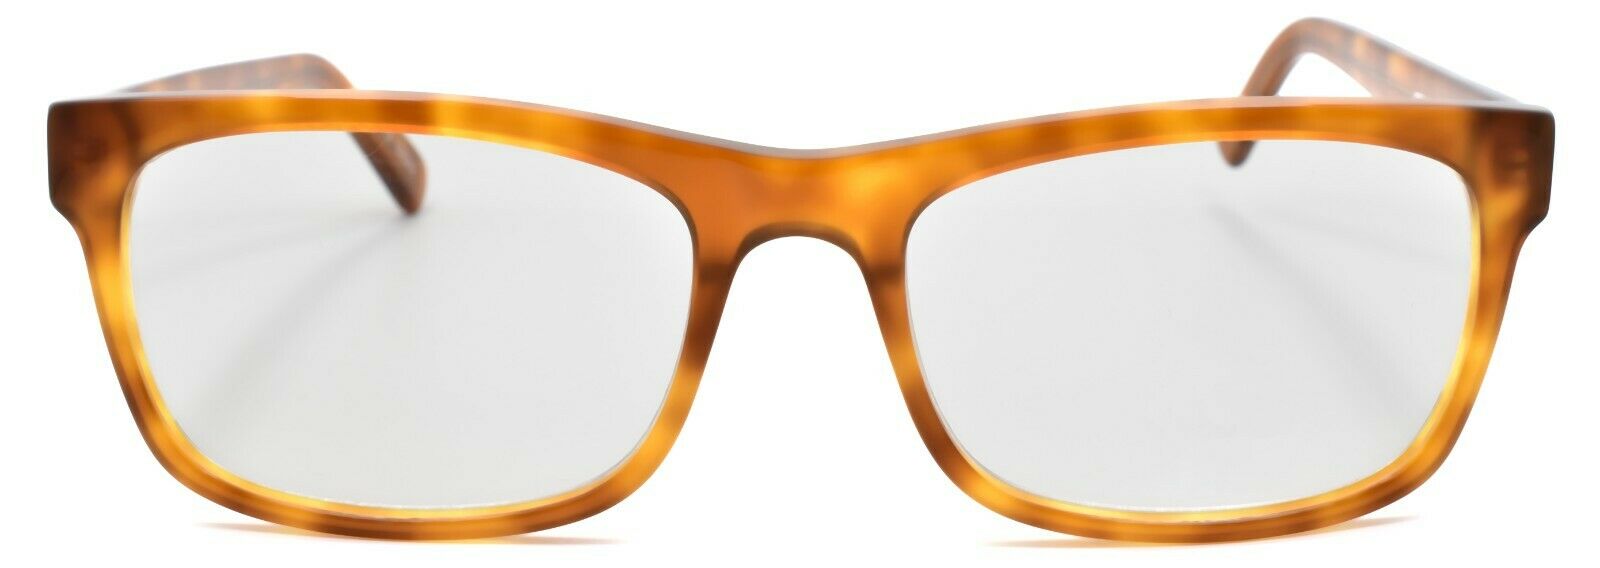 2-Eyebobs Full Zip 2337 06 Men's Reading Glasses Orange Tortoise +1.50-842754136495-IKSpecs